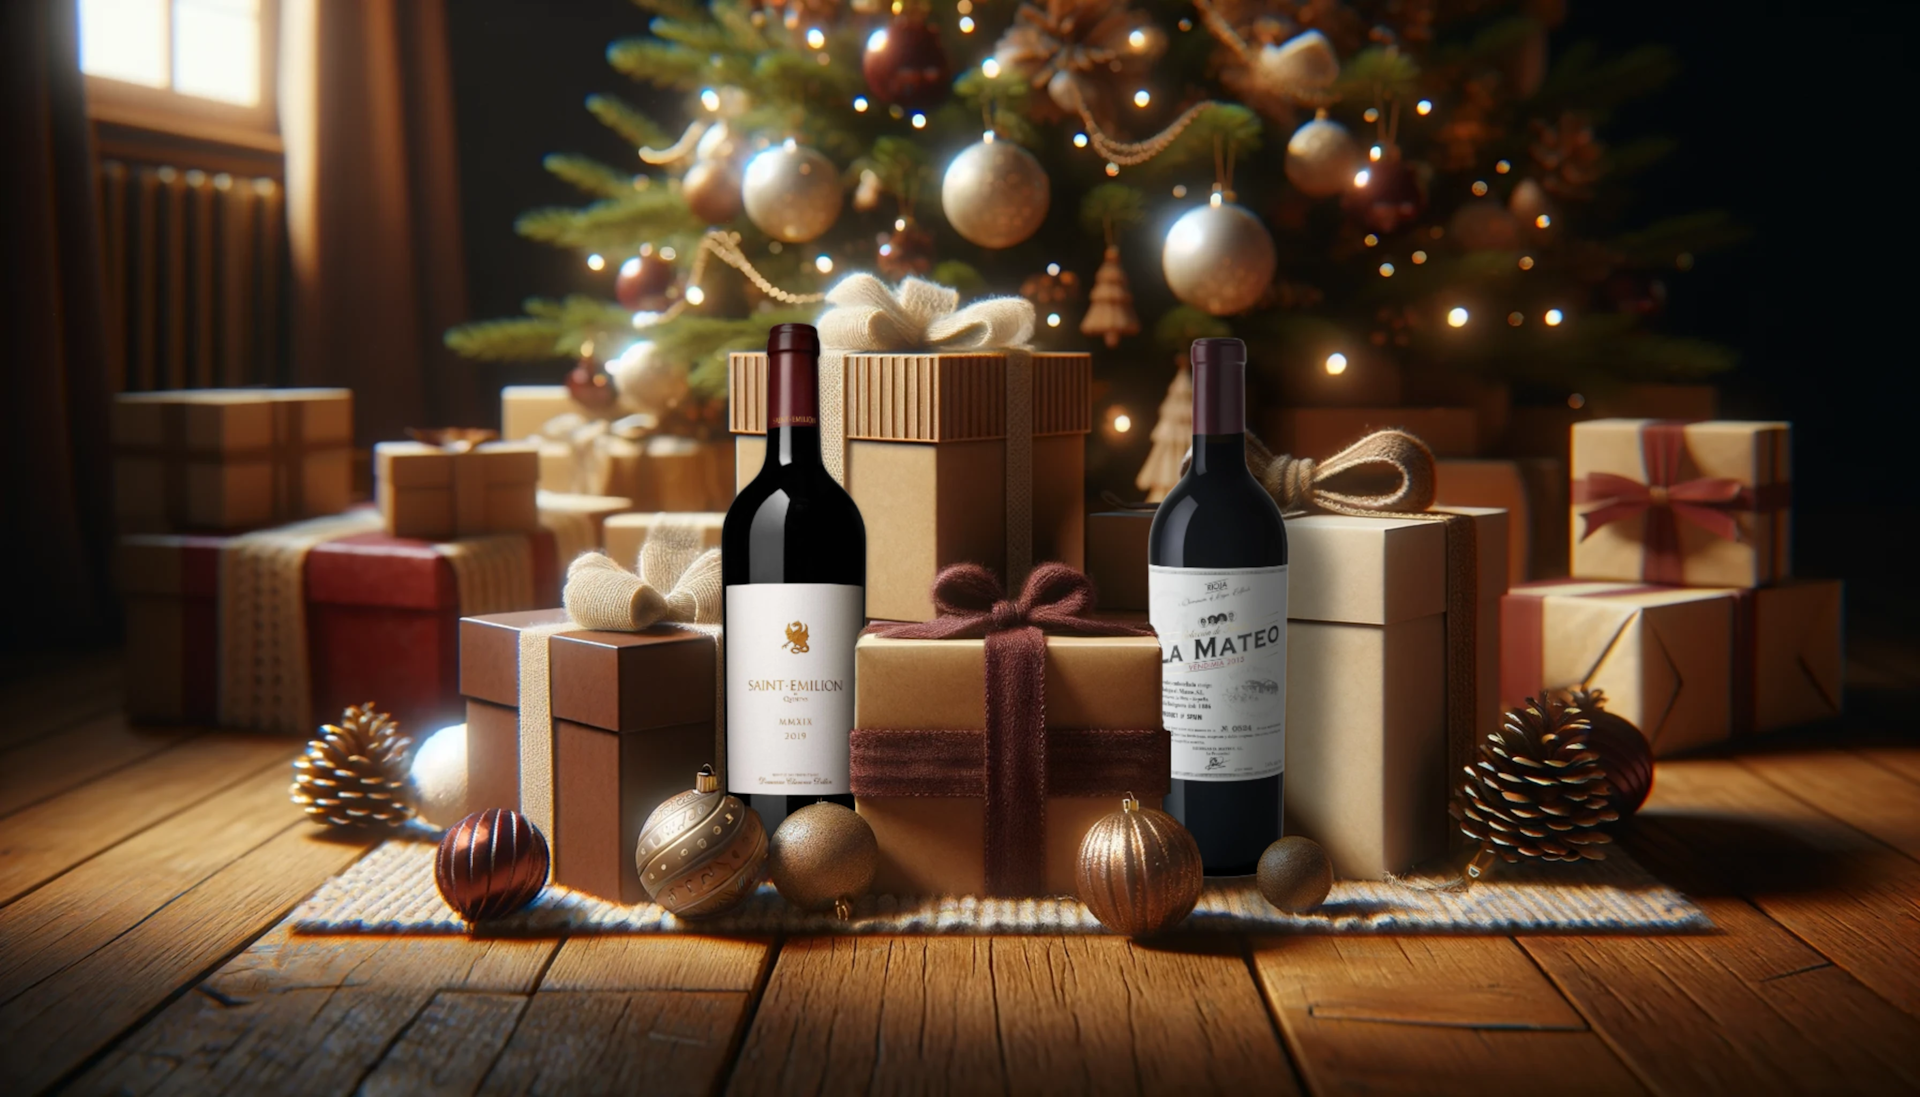 Les incontournables cadeaux de Noël pour tous les fans de vin.